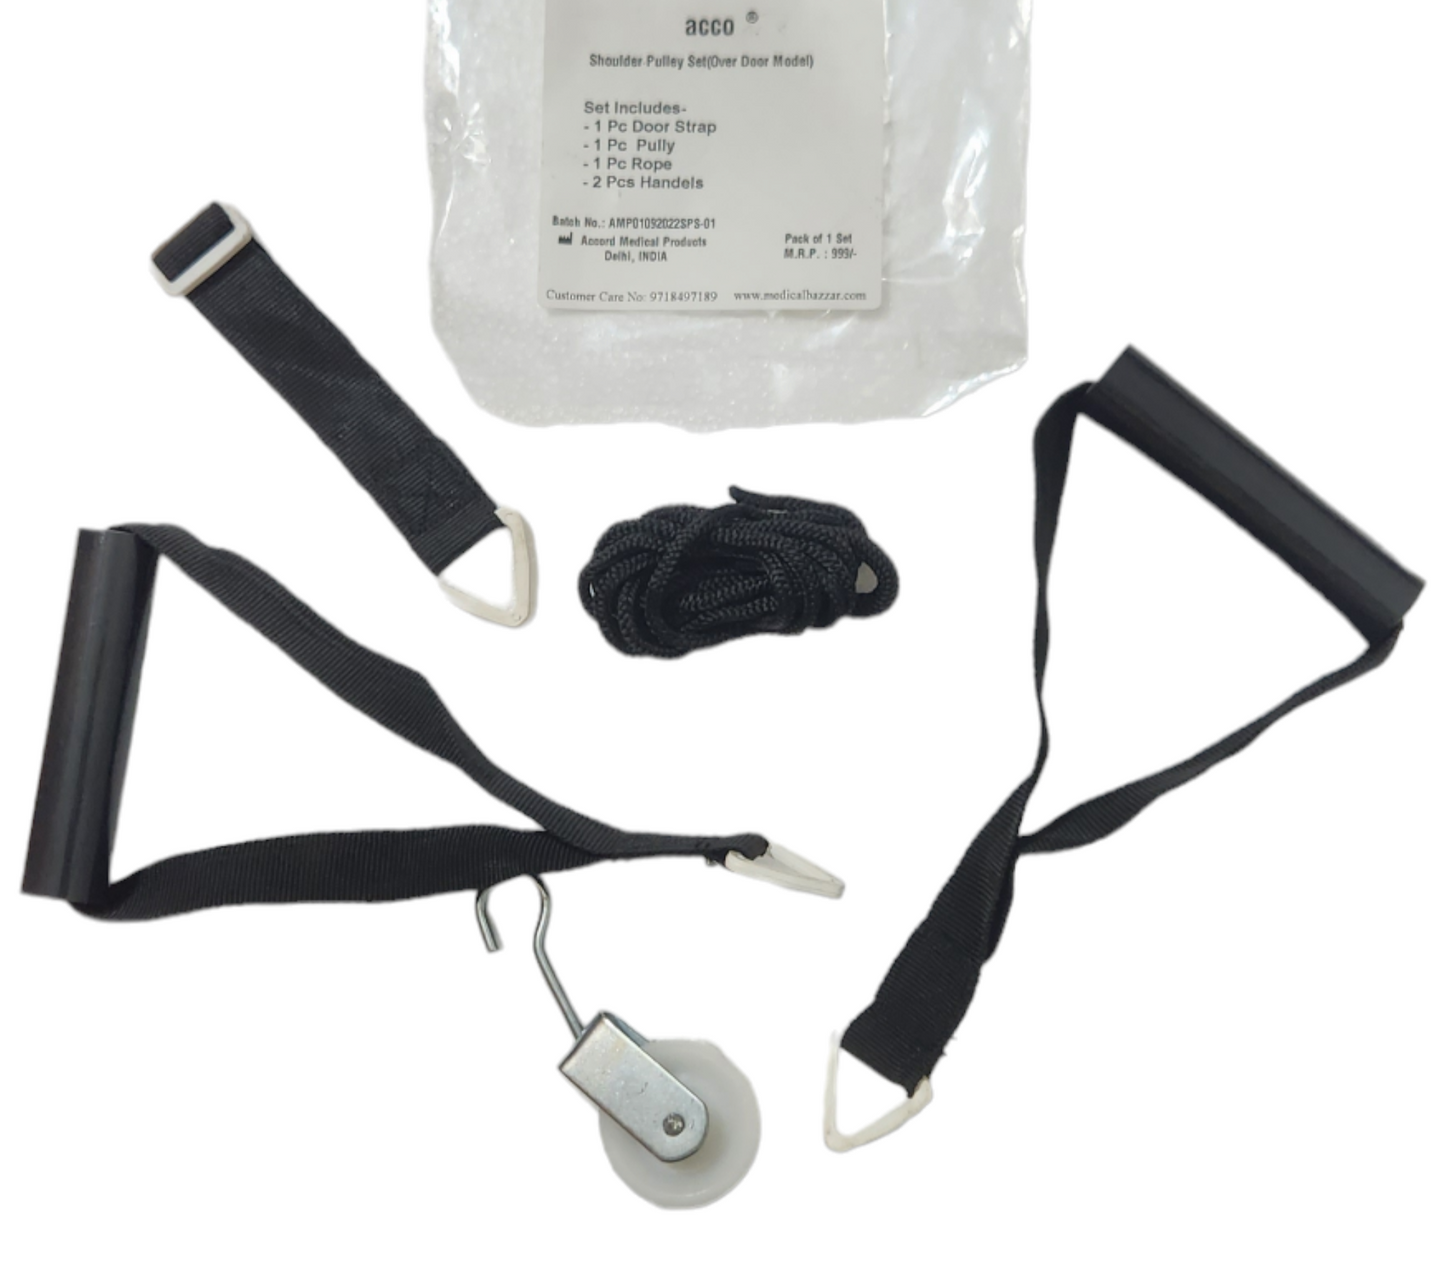 acco Shoulder Pulley Kit (Over Door Model)